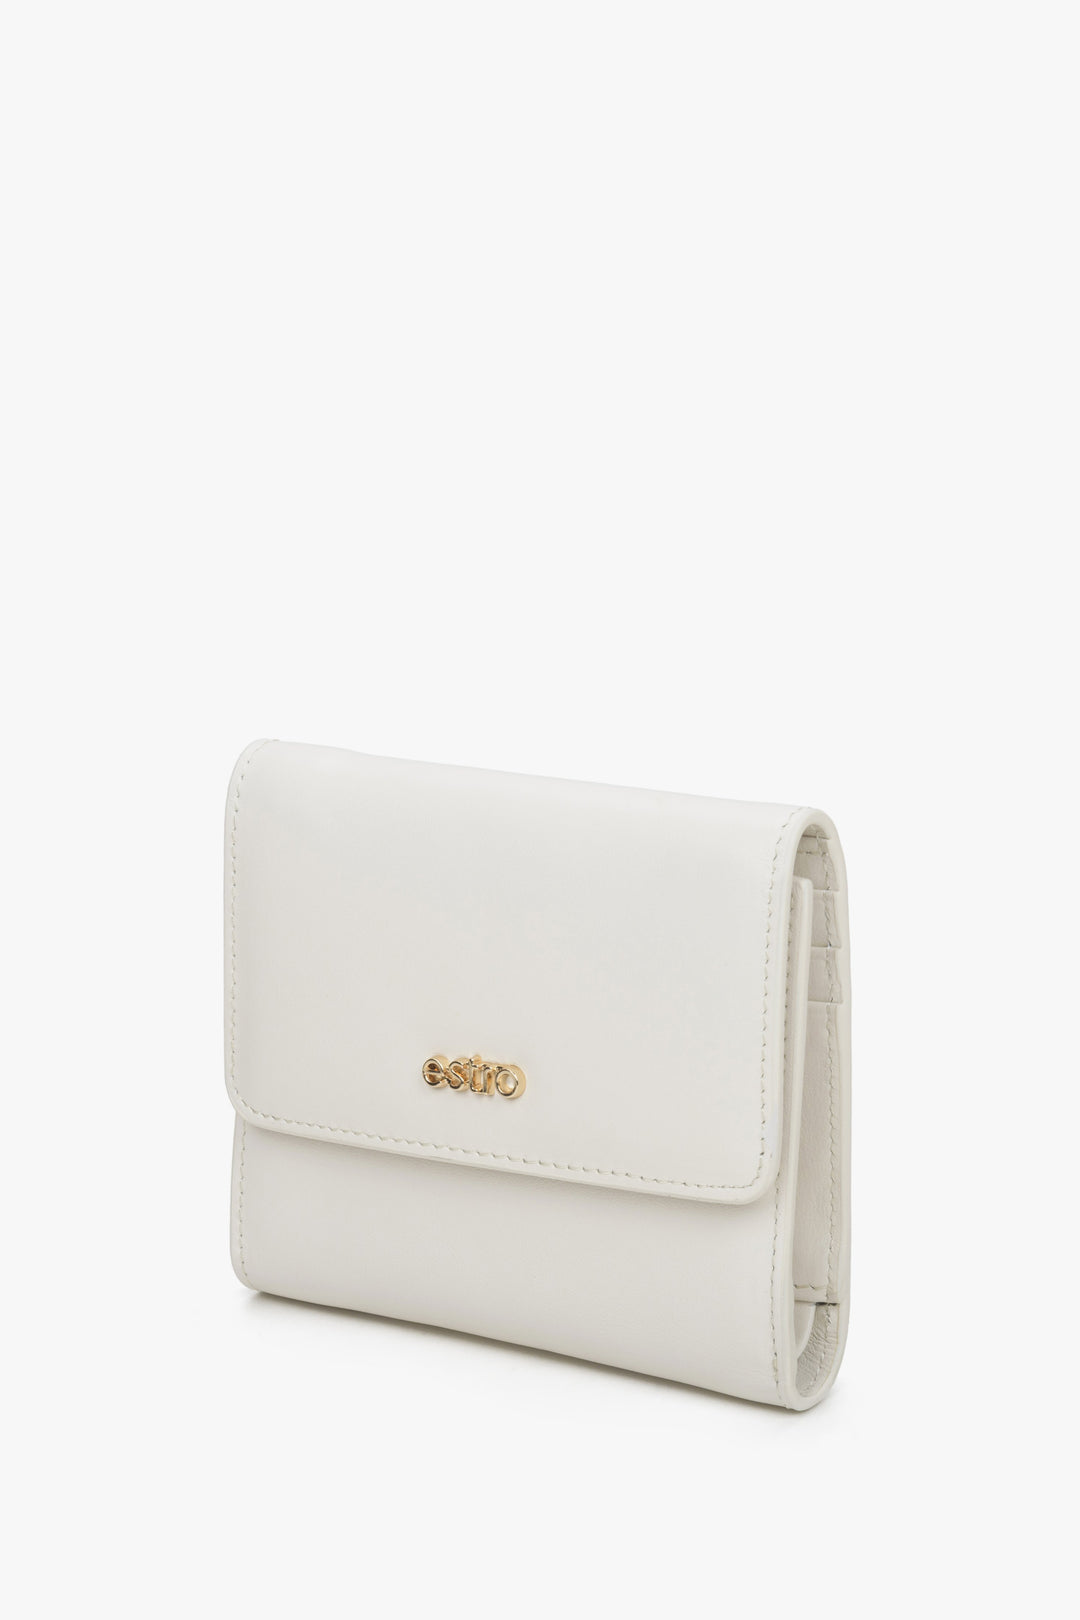 A handy light beige women's wallet by Estro.